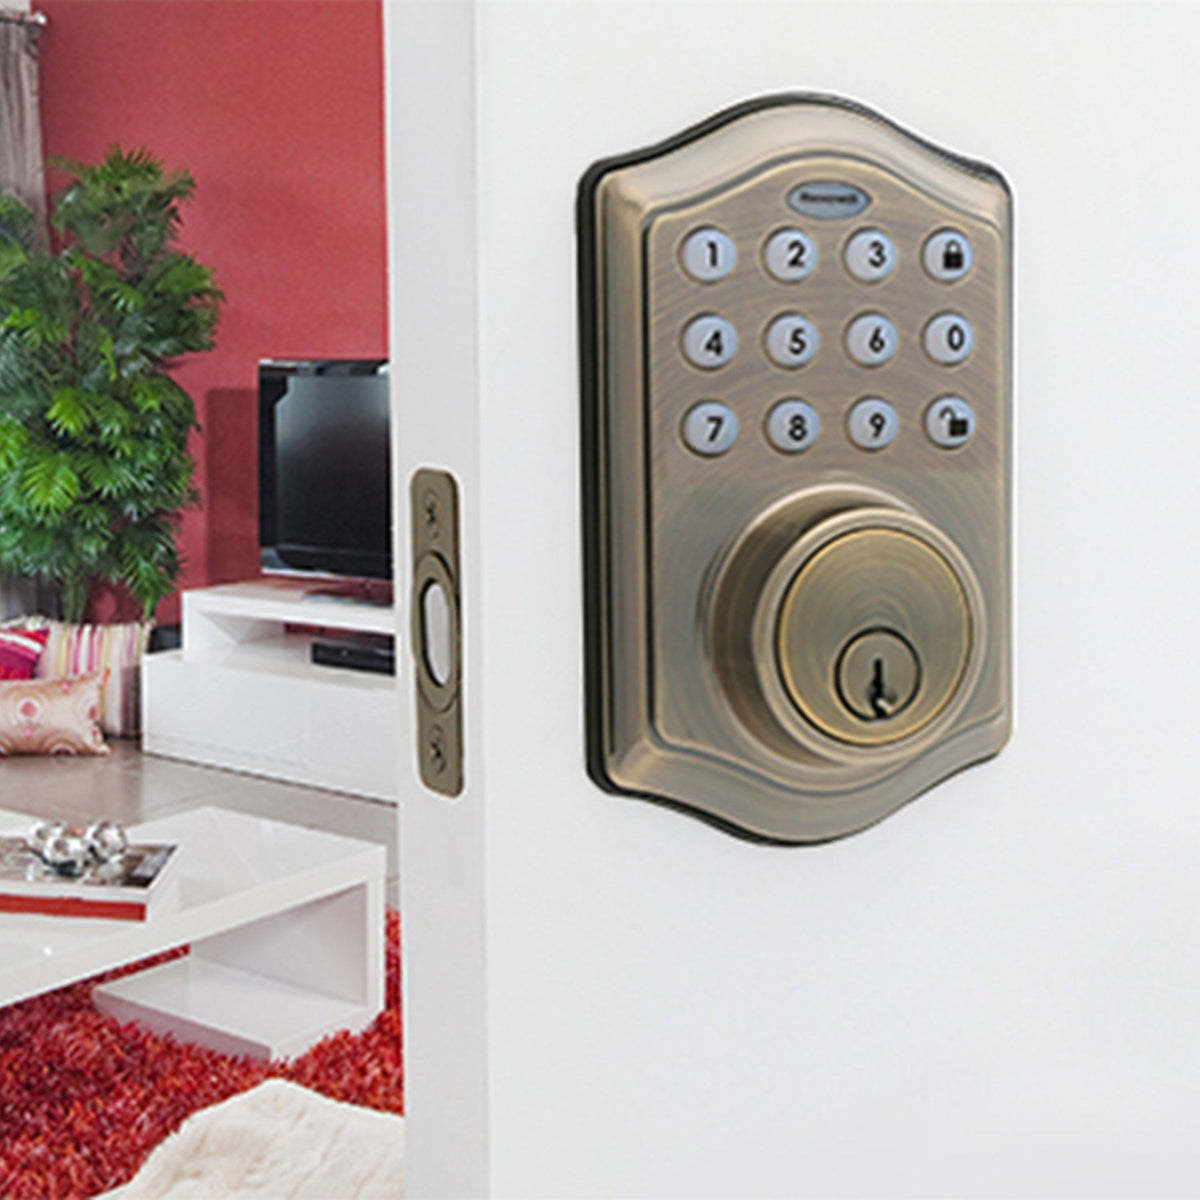 Honeywell 8712109 Electronic Deadbolt Door Lock with Keypad in Antique Brass Installed on Door